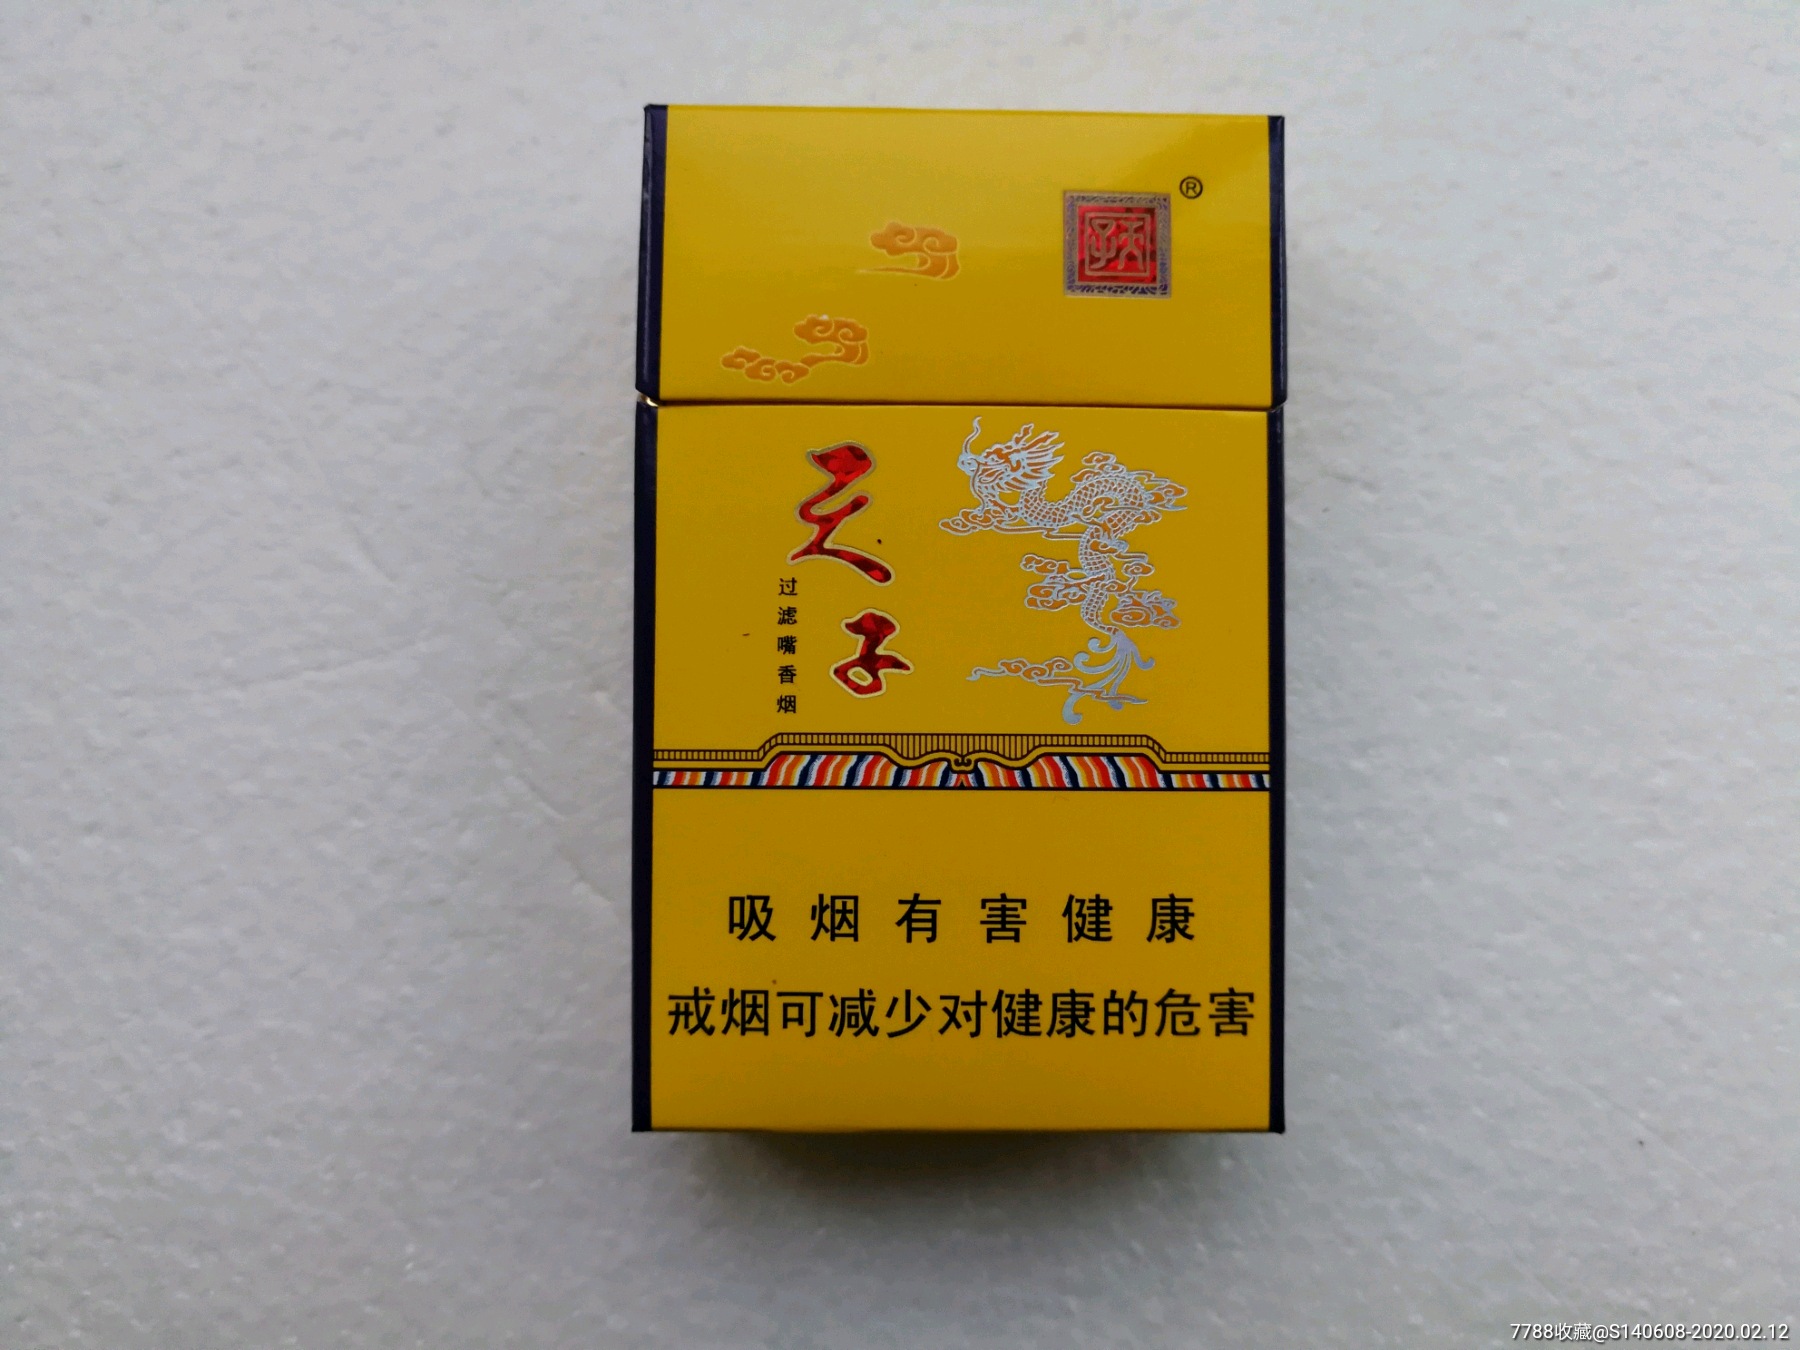 天子金【12版】3d-价格:2元-se71061723-烟标/烟盒-零售-7788收藏